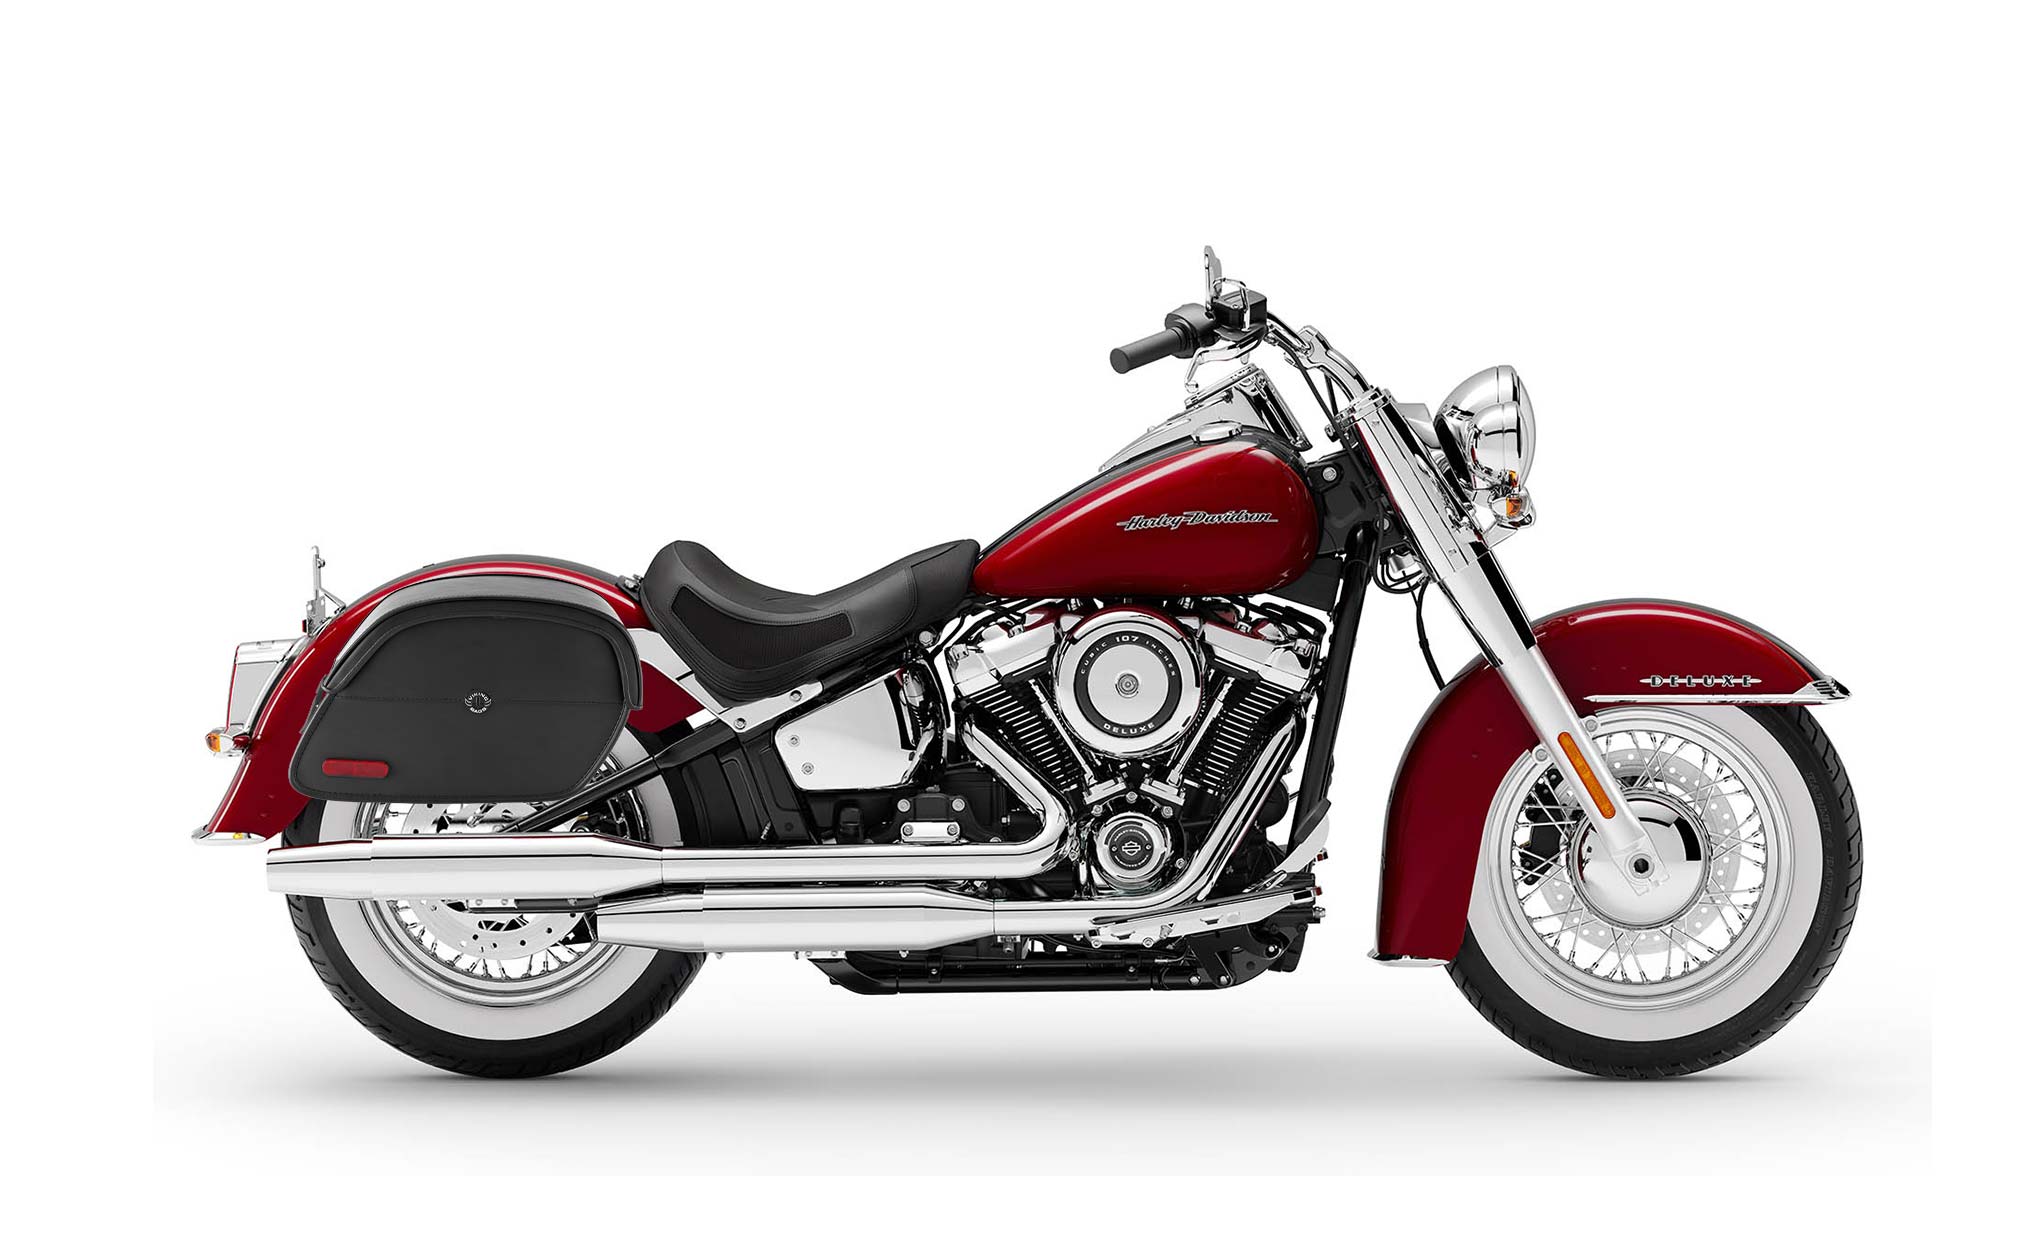 Viking California Large Leather Motorcycle Saddlebags For Harley Davidson Softail Deluxe Flstn I on Bike Photo @expand